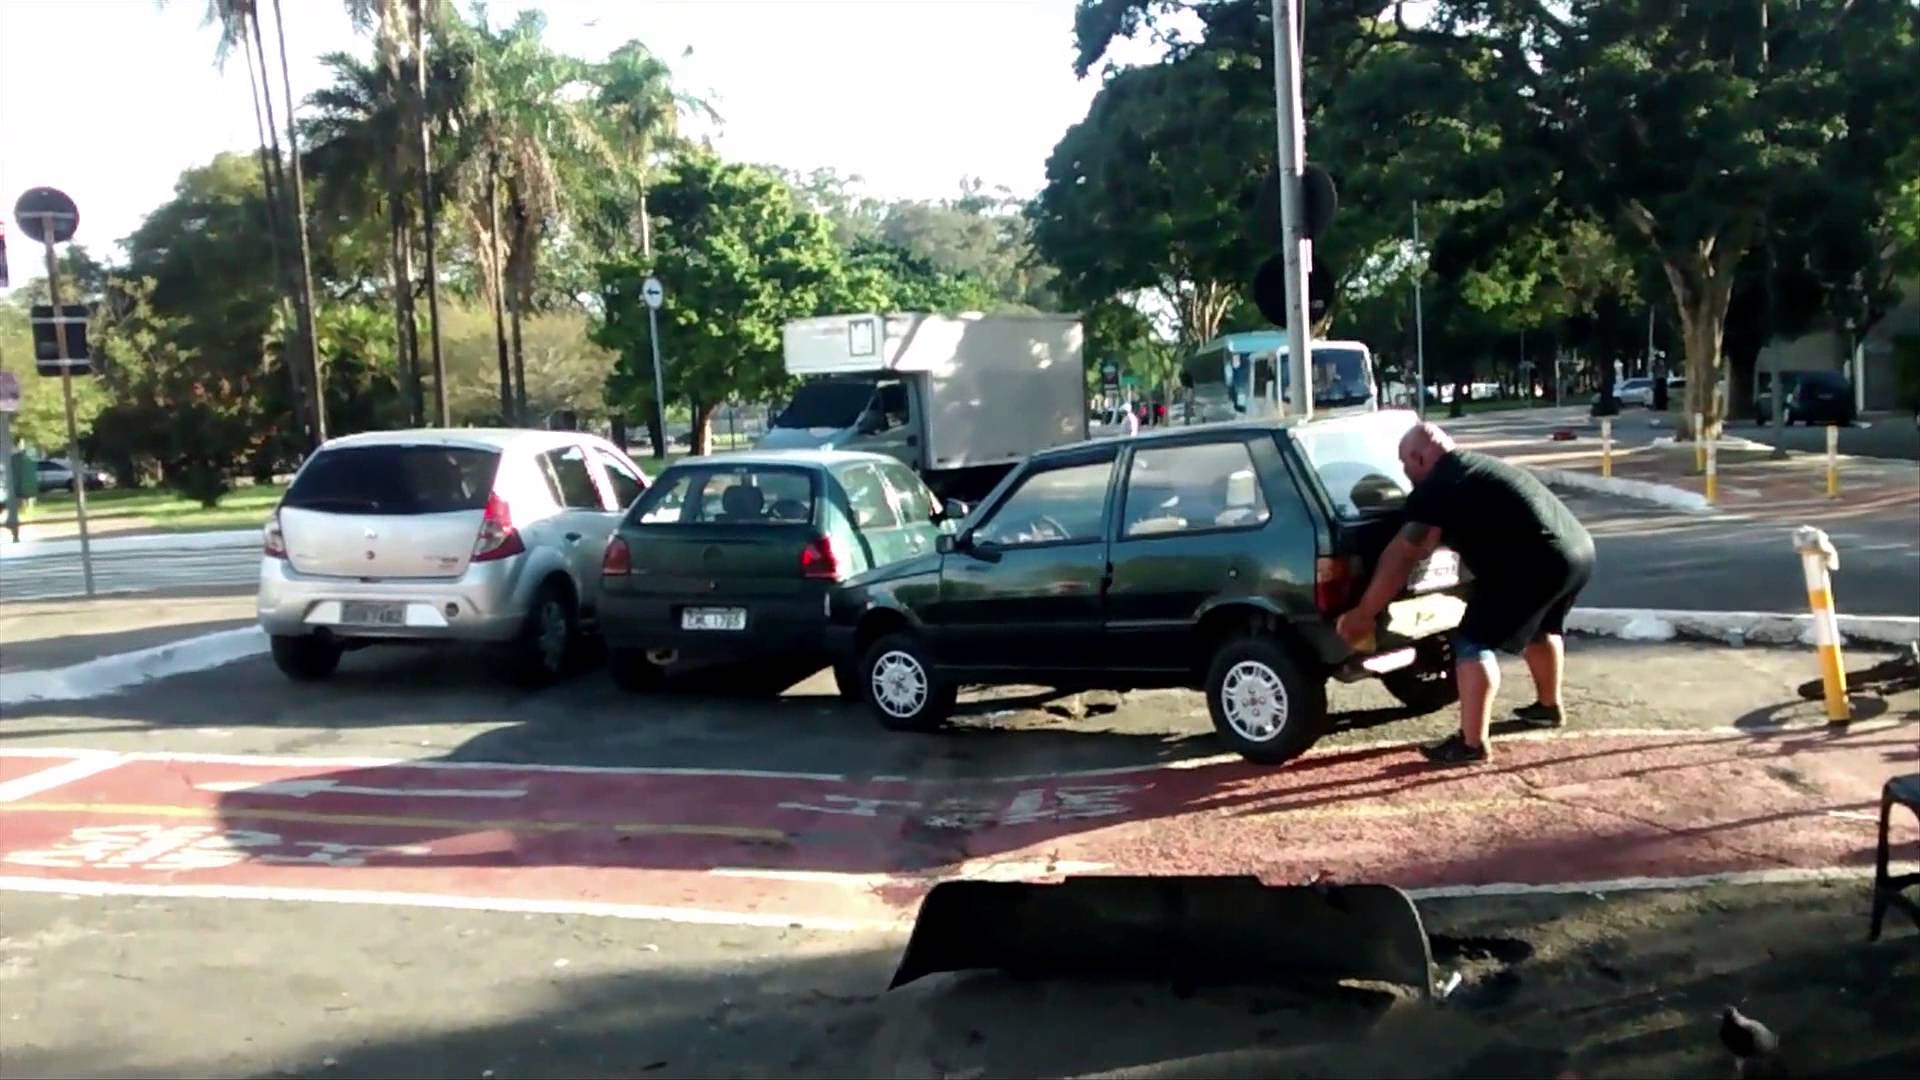 VIDEO: Neatstāj savu auto tam neparedzētā vietā! Garām var braukt/iet kāds spēkavīrs. (O homem mais forte do mundo)